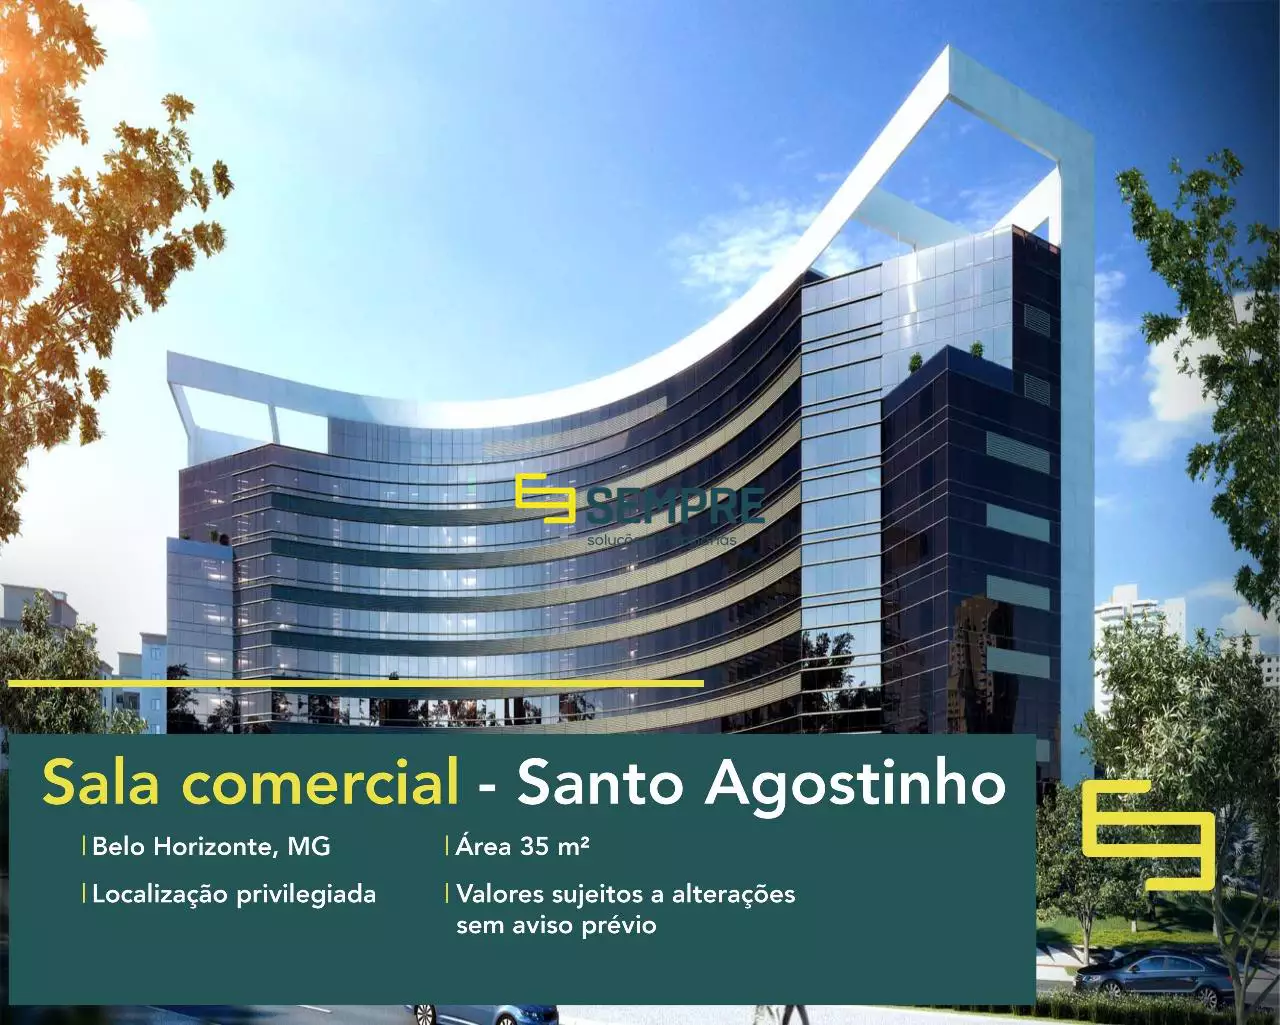 Andar comercial para vender no Edifício Medplex - Belo Horizonte, em excelente localização. O ponto comercial conta com área de 35,20 m².